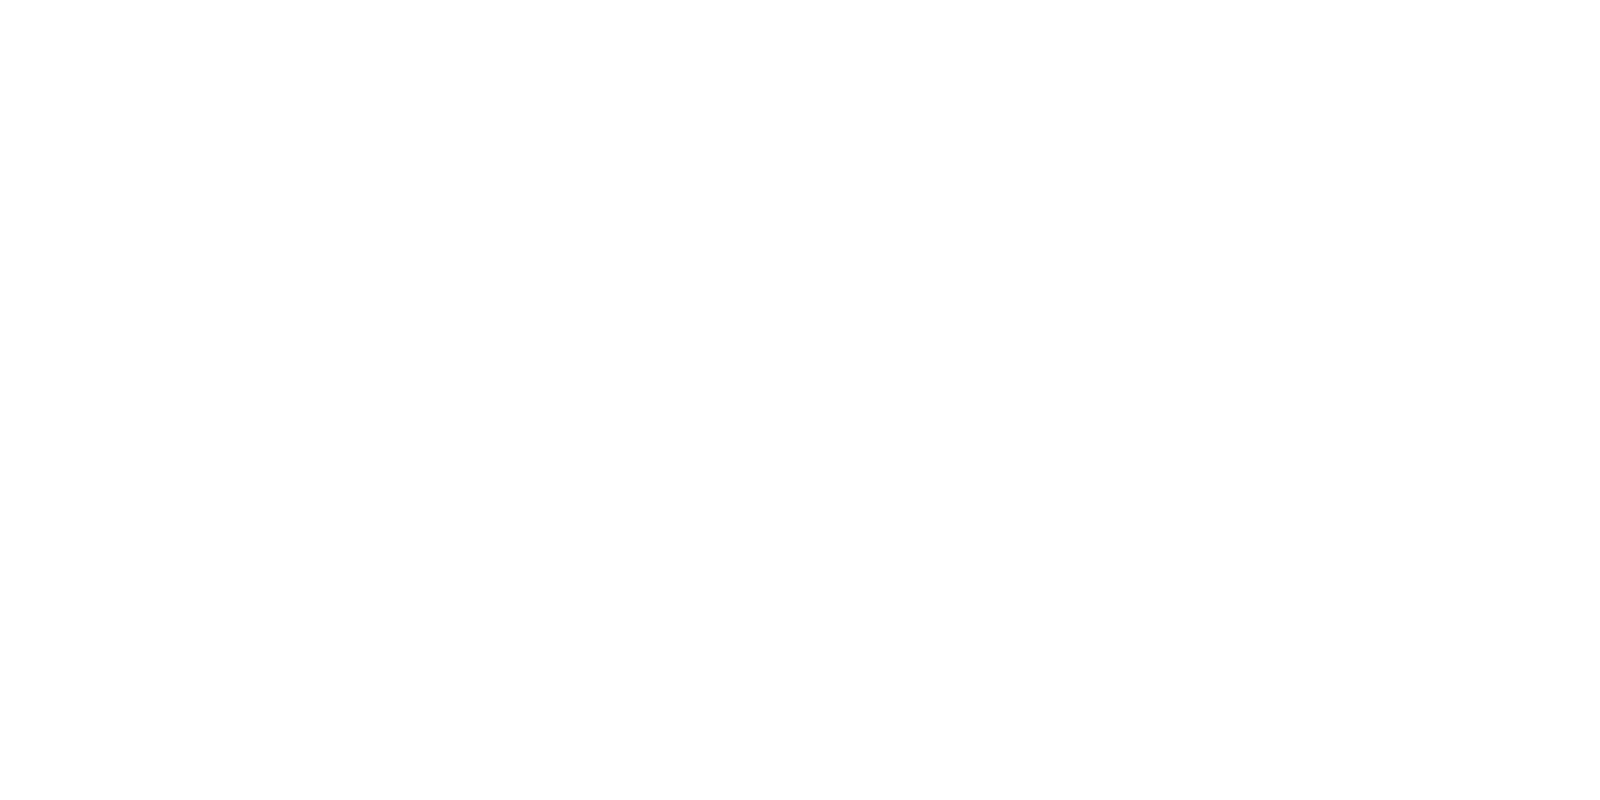 Aladdin 2019 No Background Clip Art